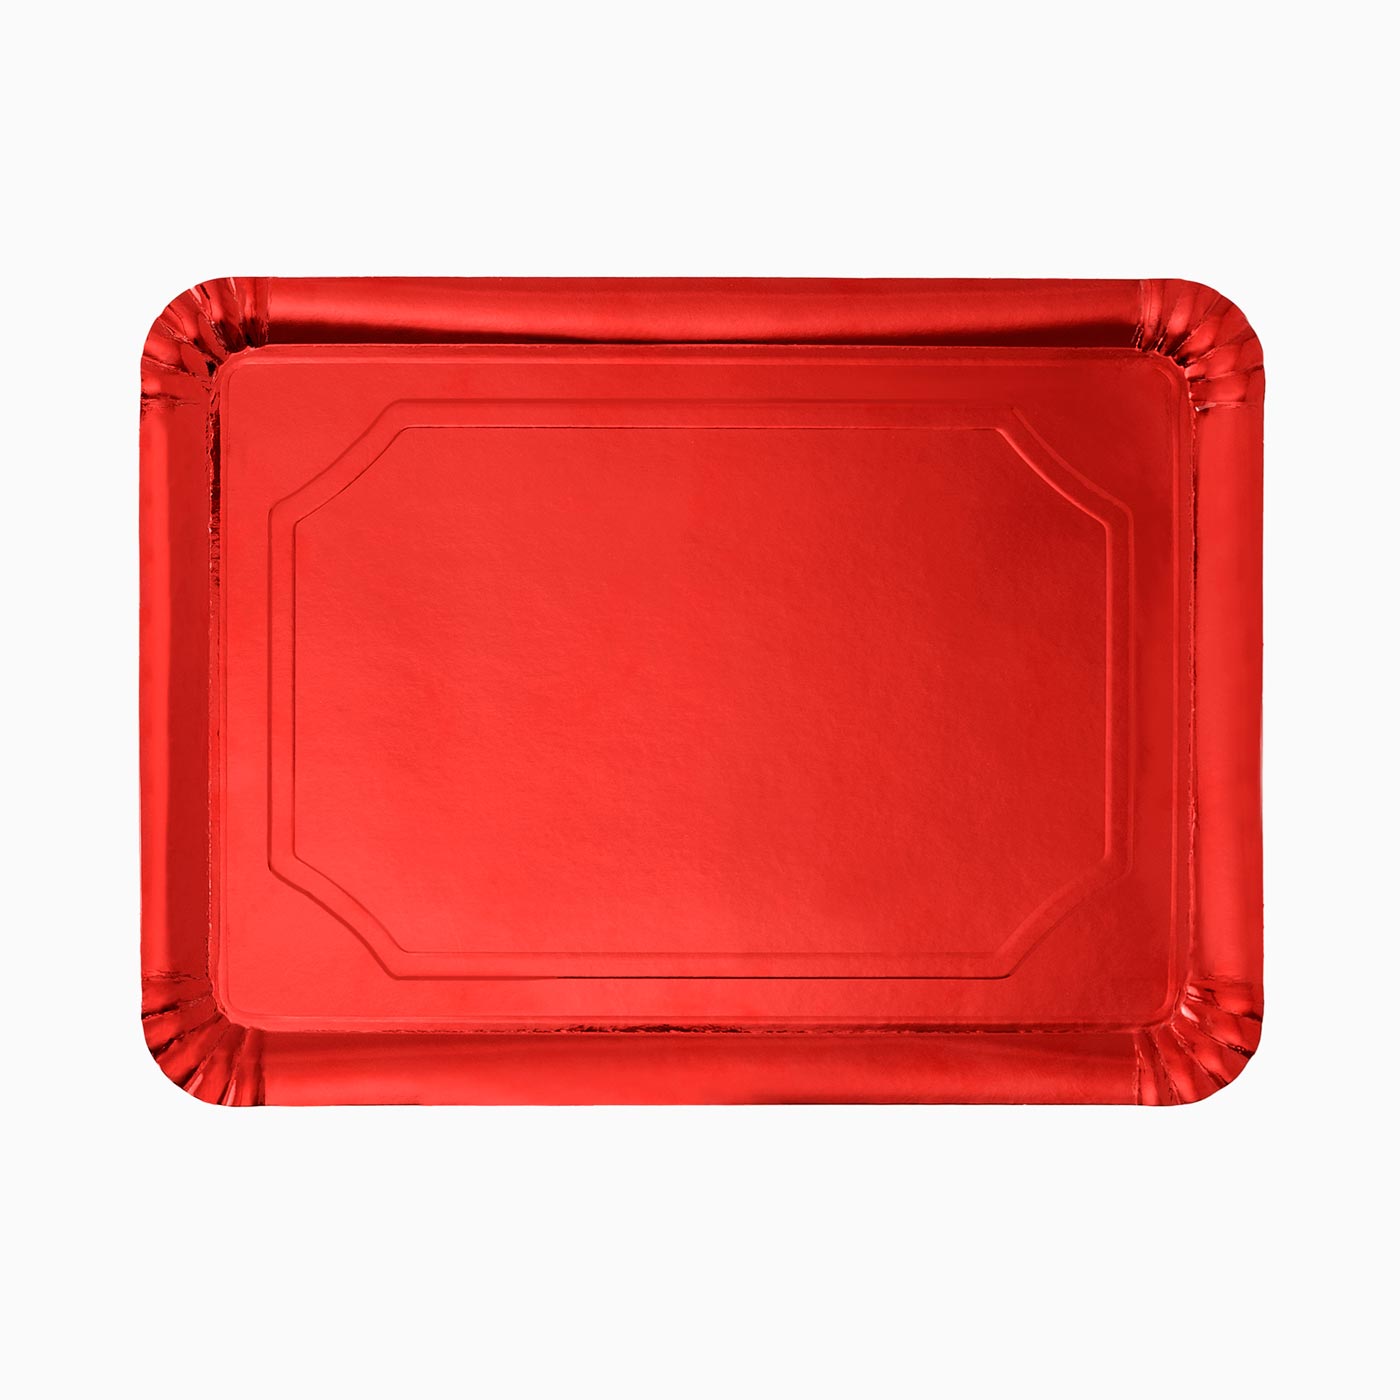 25 x 34 cm plateau rectangulaire rouge